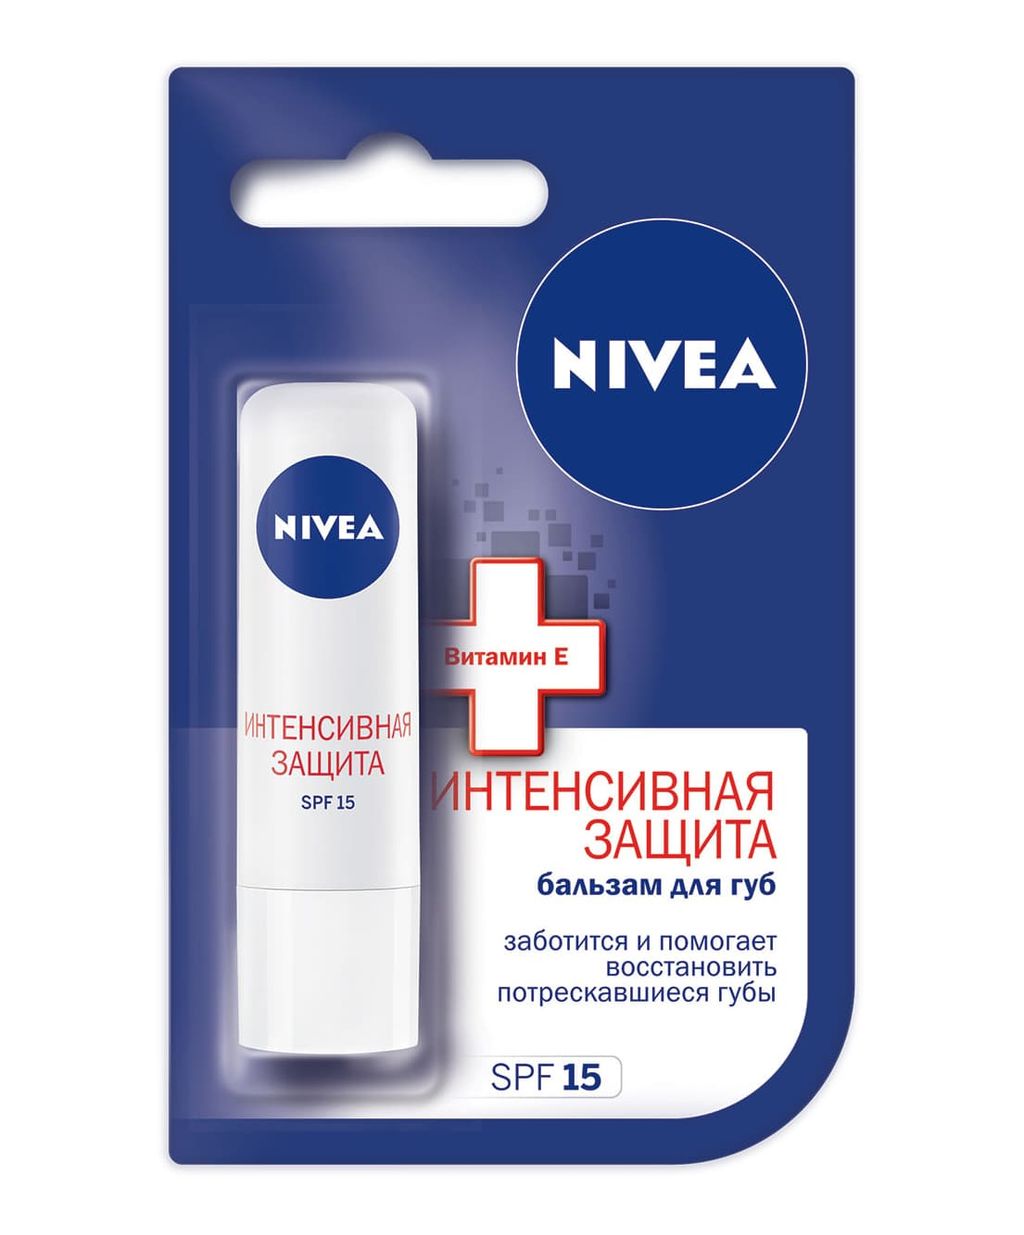 фото упаковки Nivea Бальзам для губ Интенсивная защита